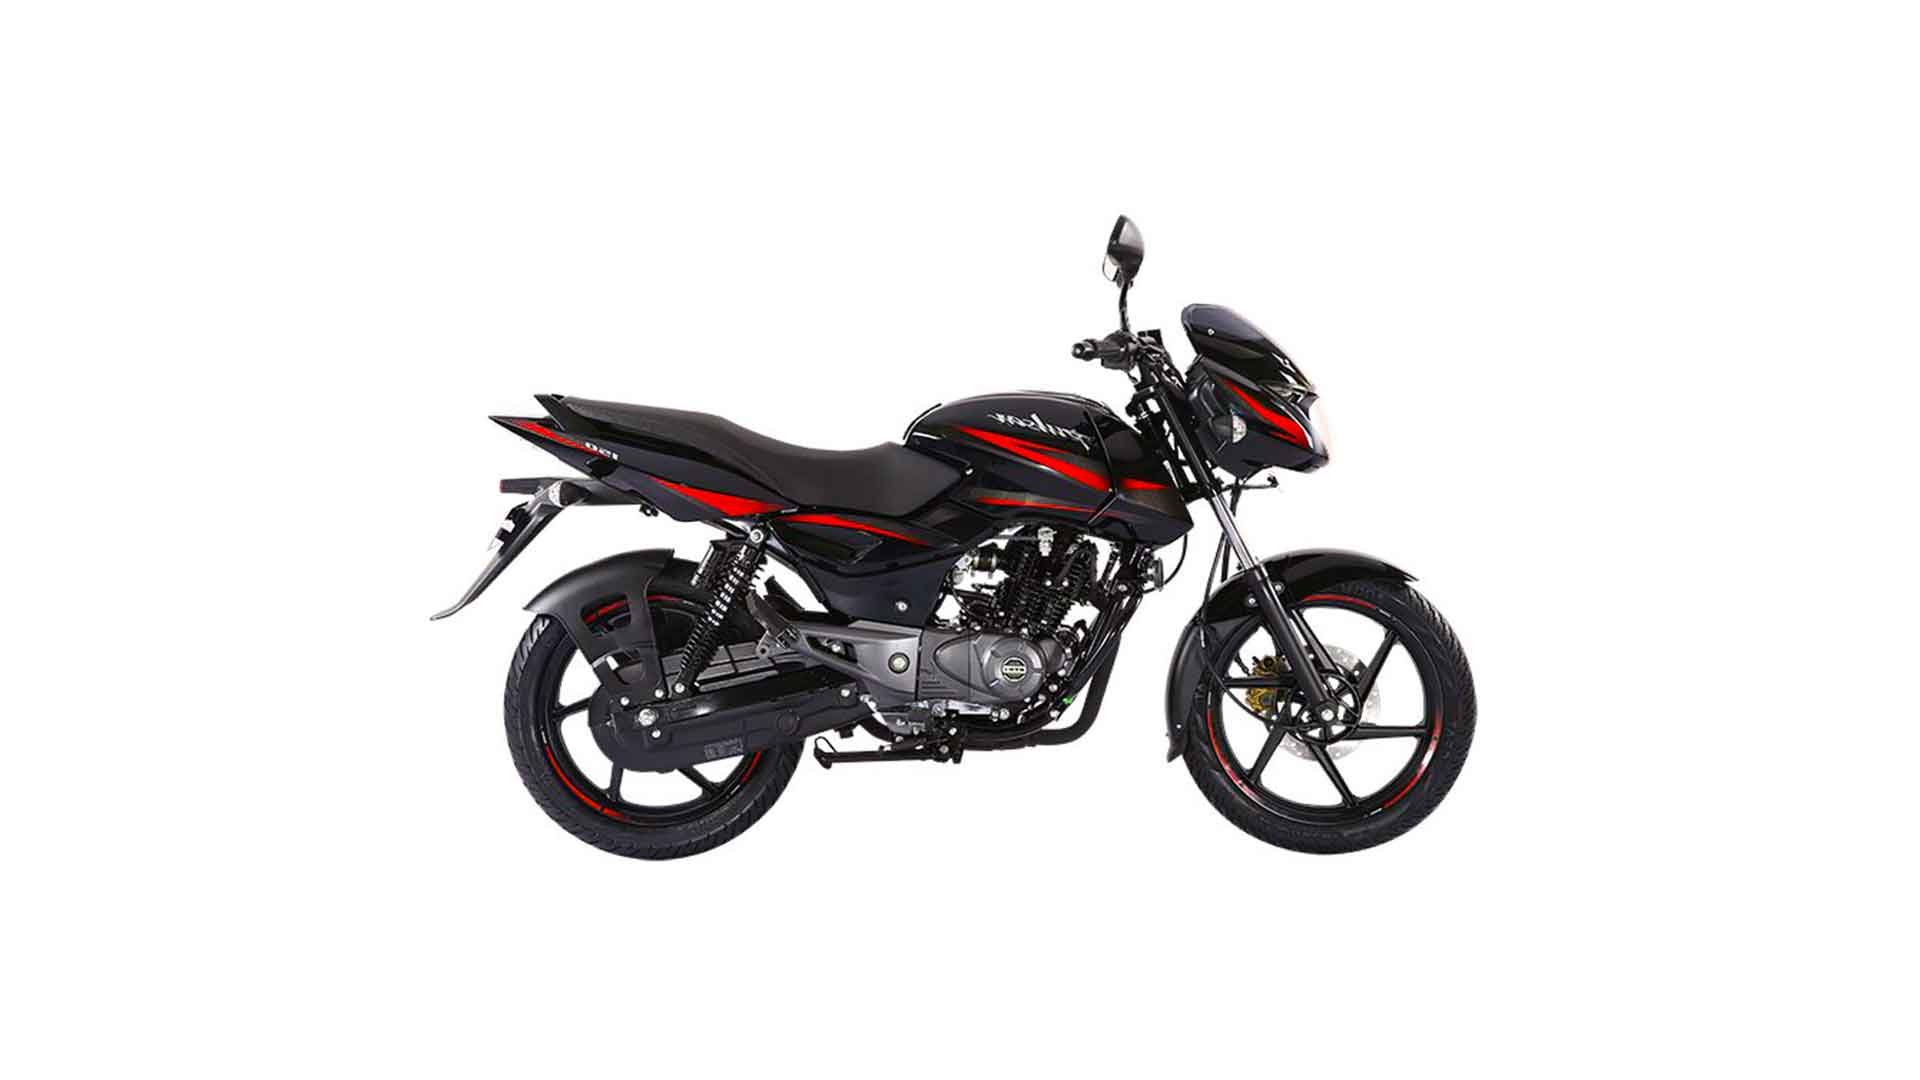 Pulsar 150 SD Price in Bangladesh - Bengal Biker | Motorcycle Price ...